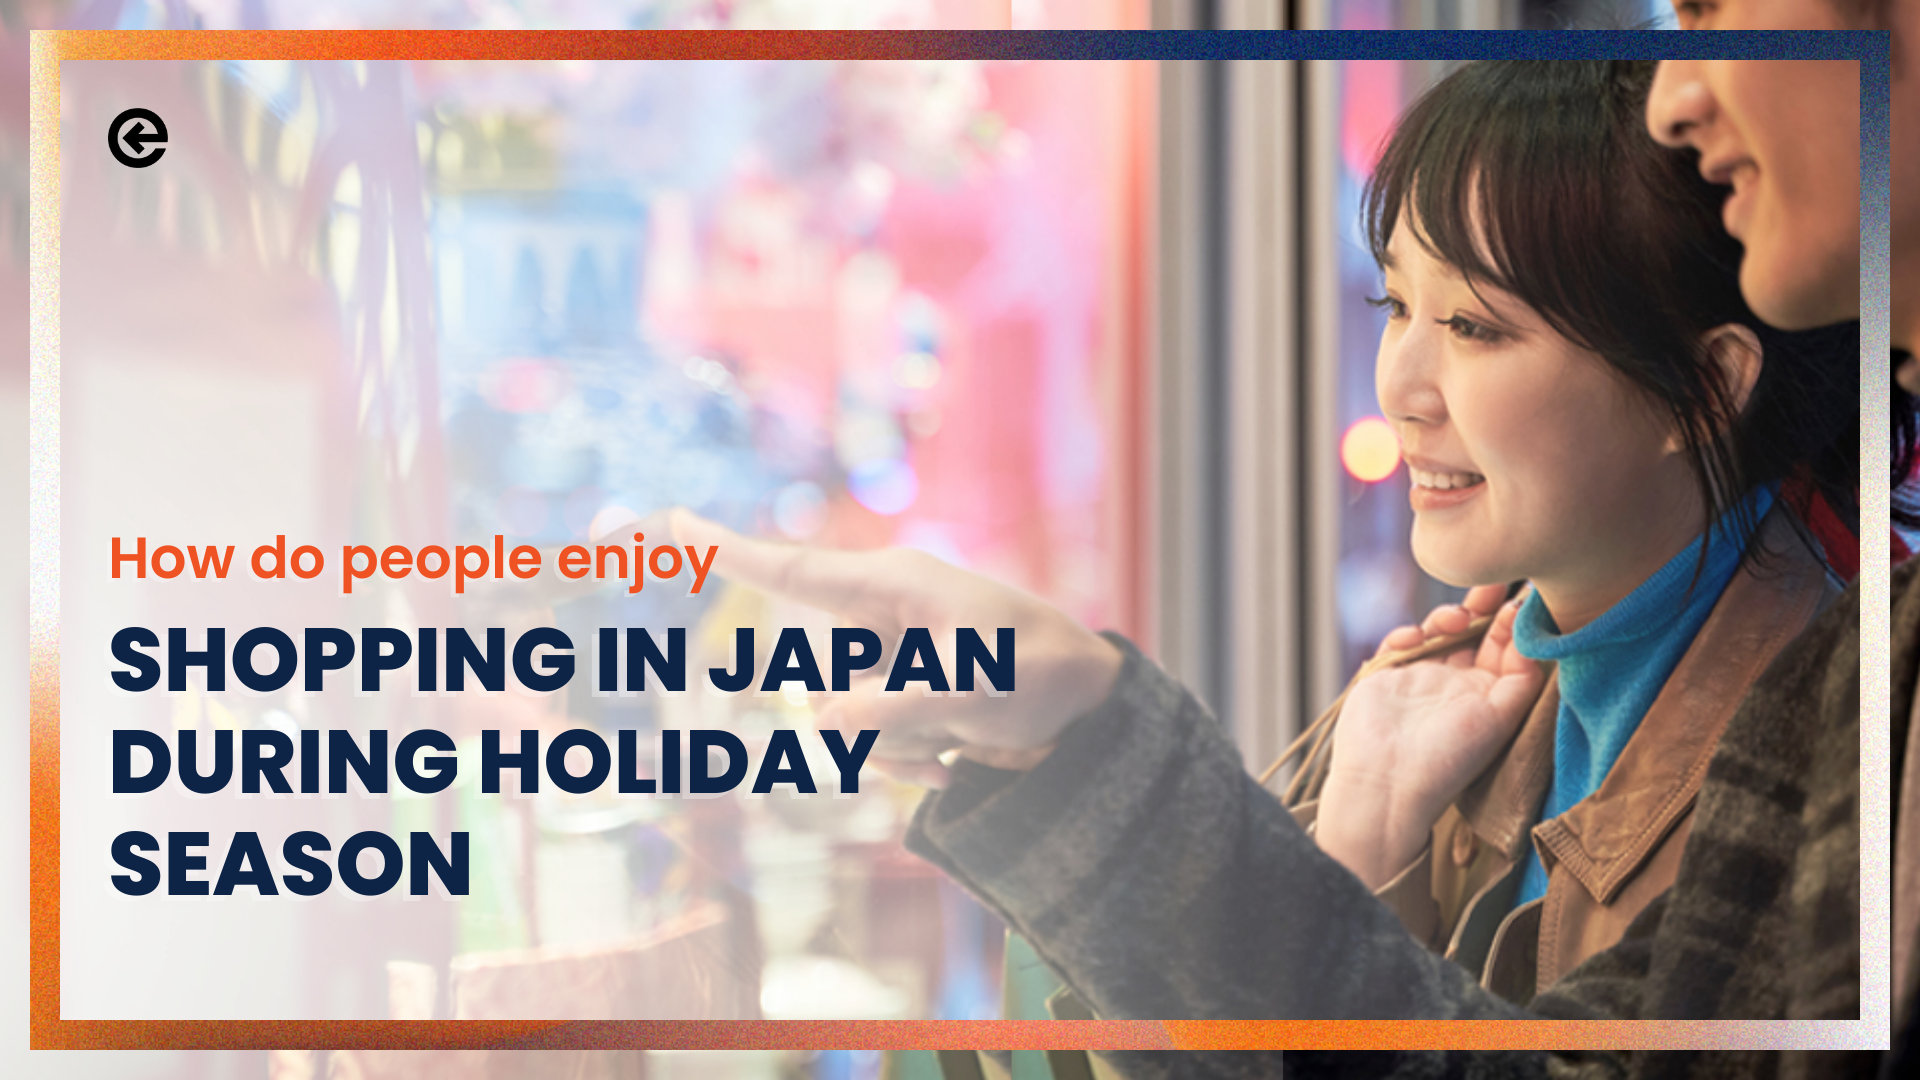 日本のホリデーシーズン、人々はどのように買い物を楽しんでいるのか？